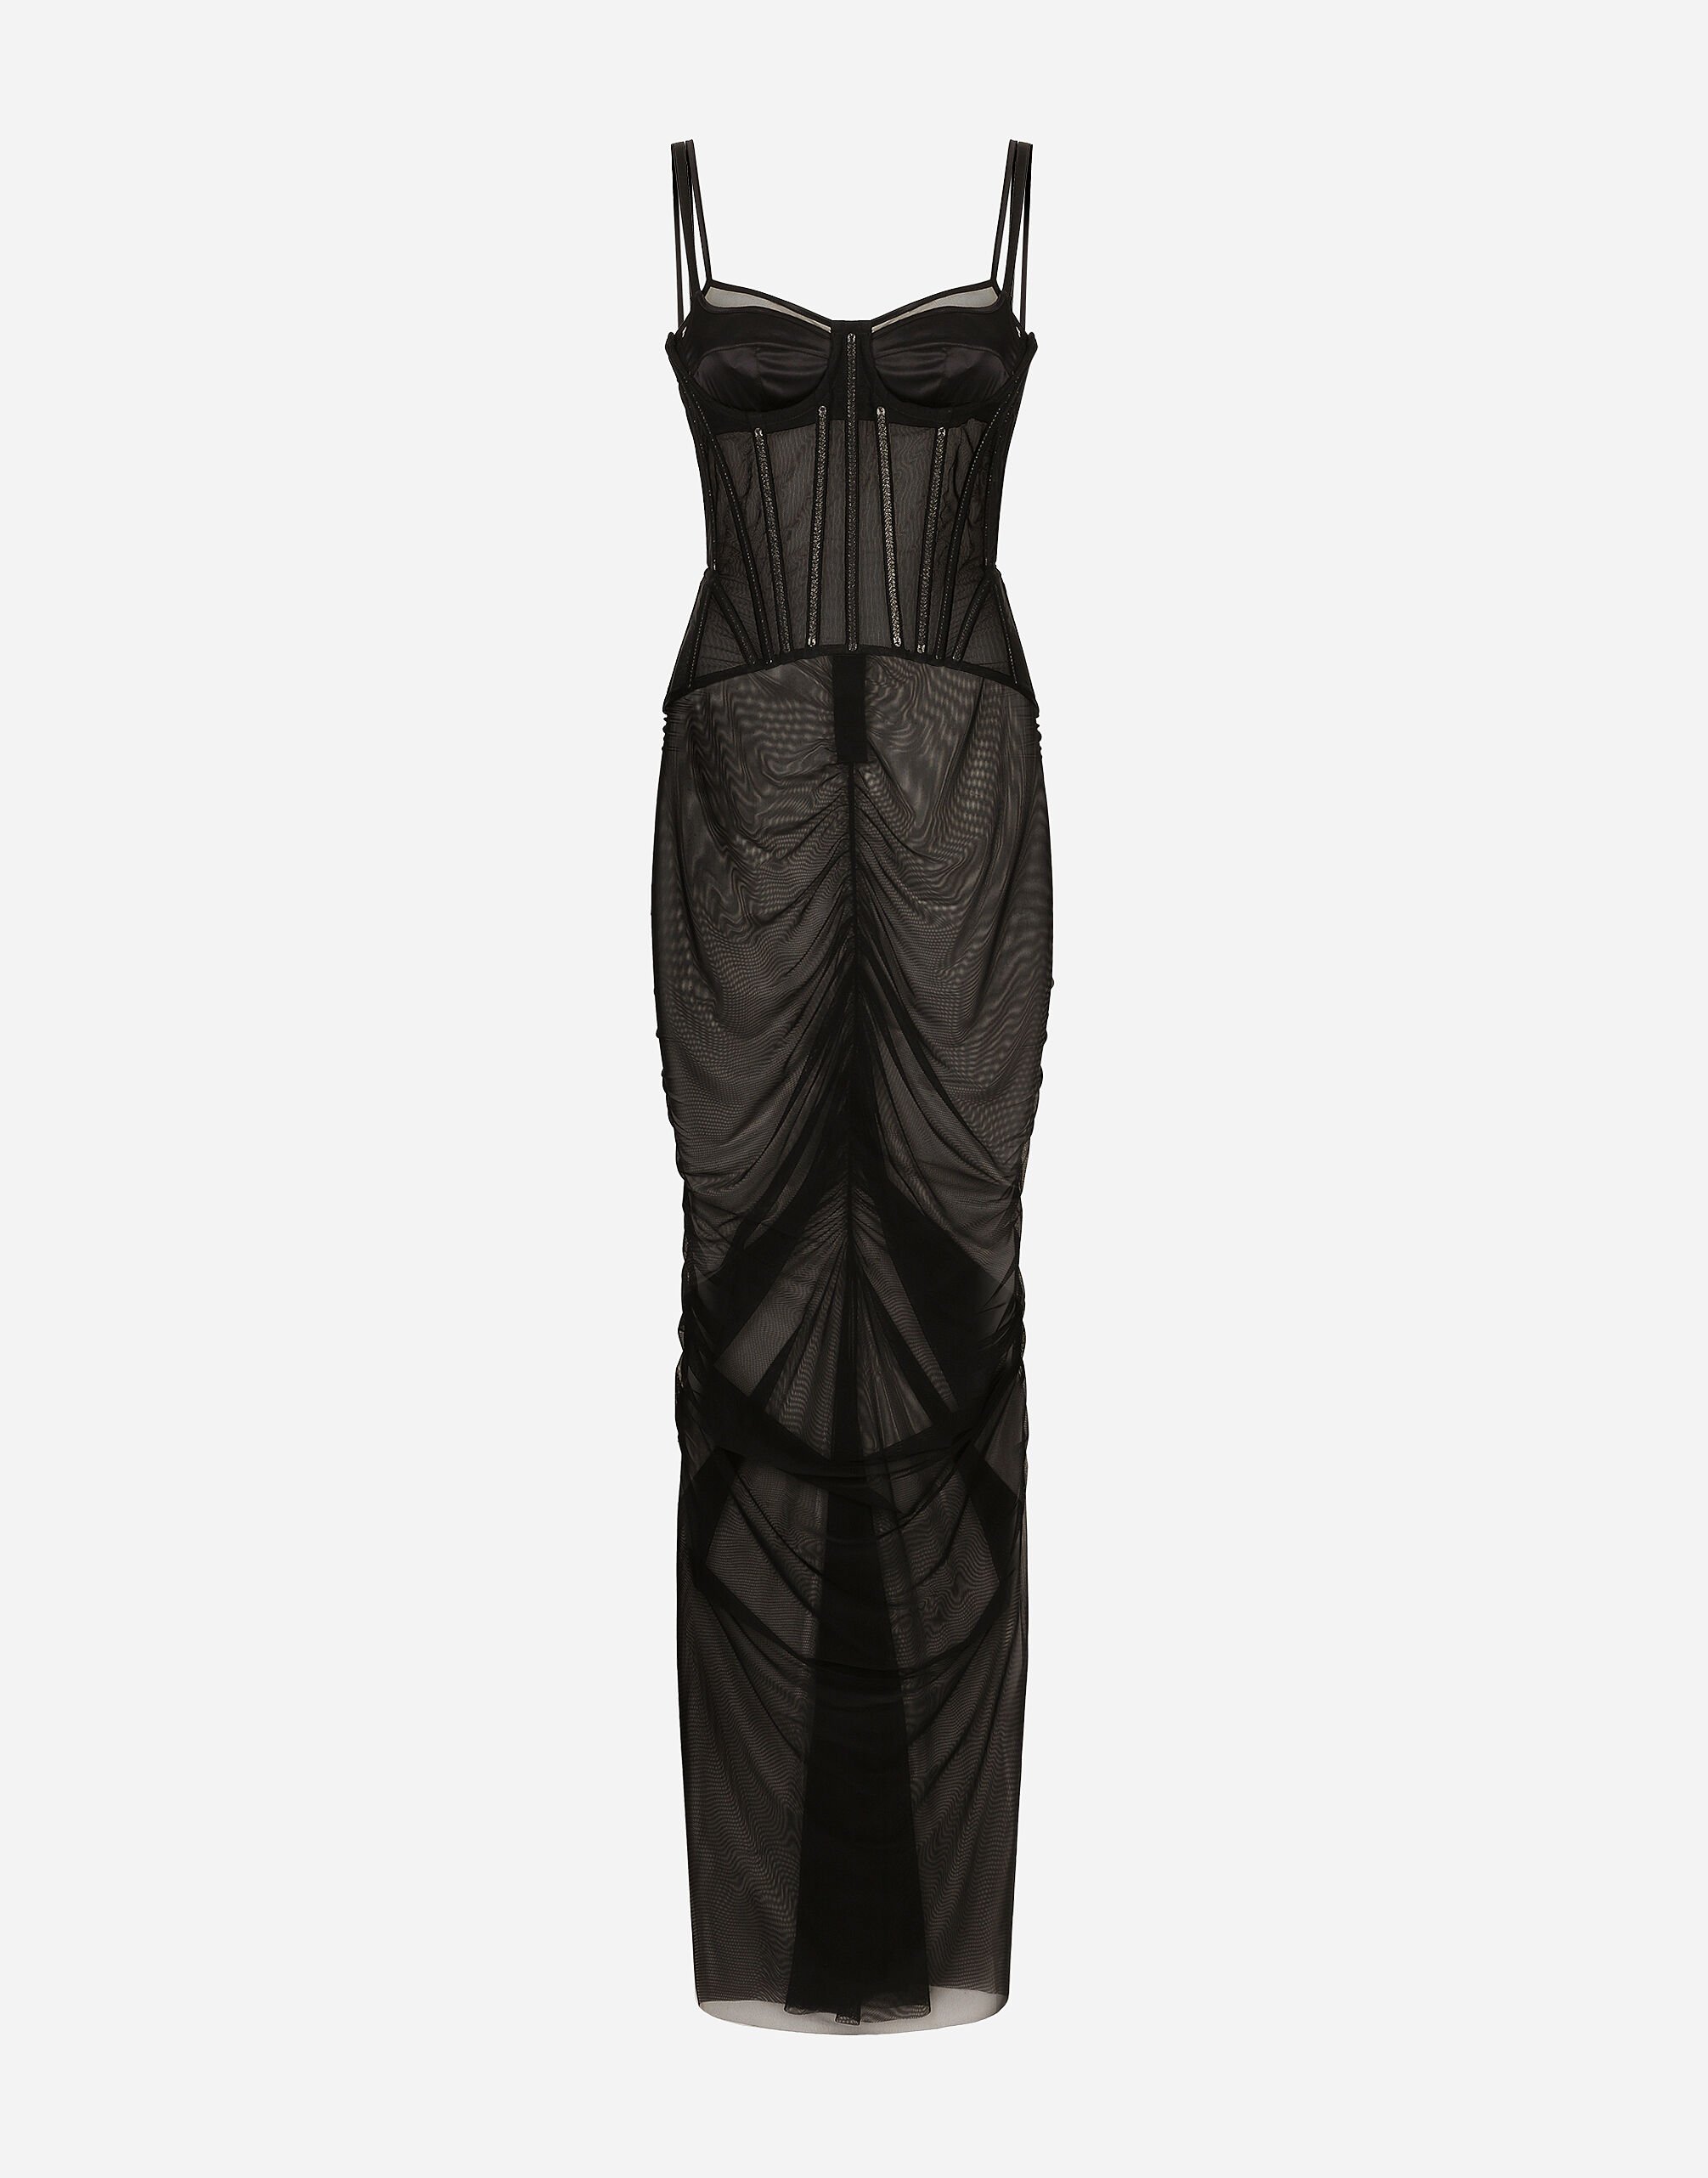 Dolce & Gabbana 薄纱束身细节长款连衣裙 黑色 F63H1TGDC38